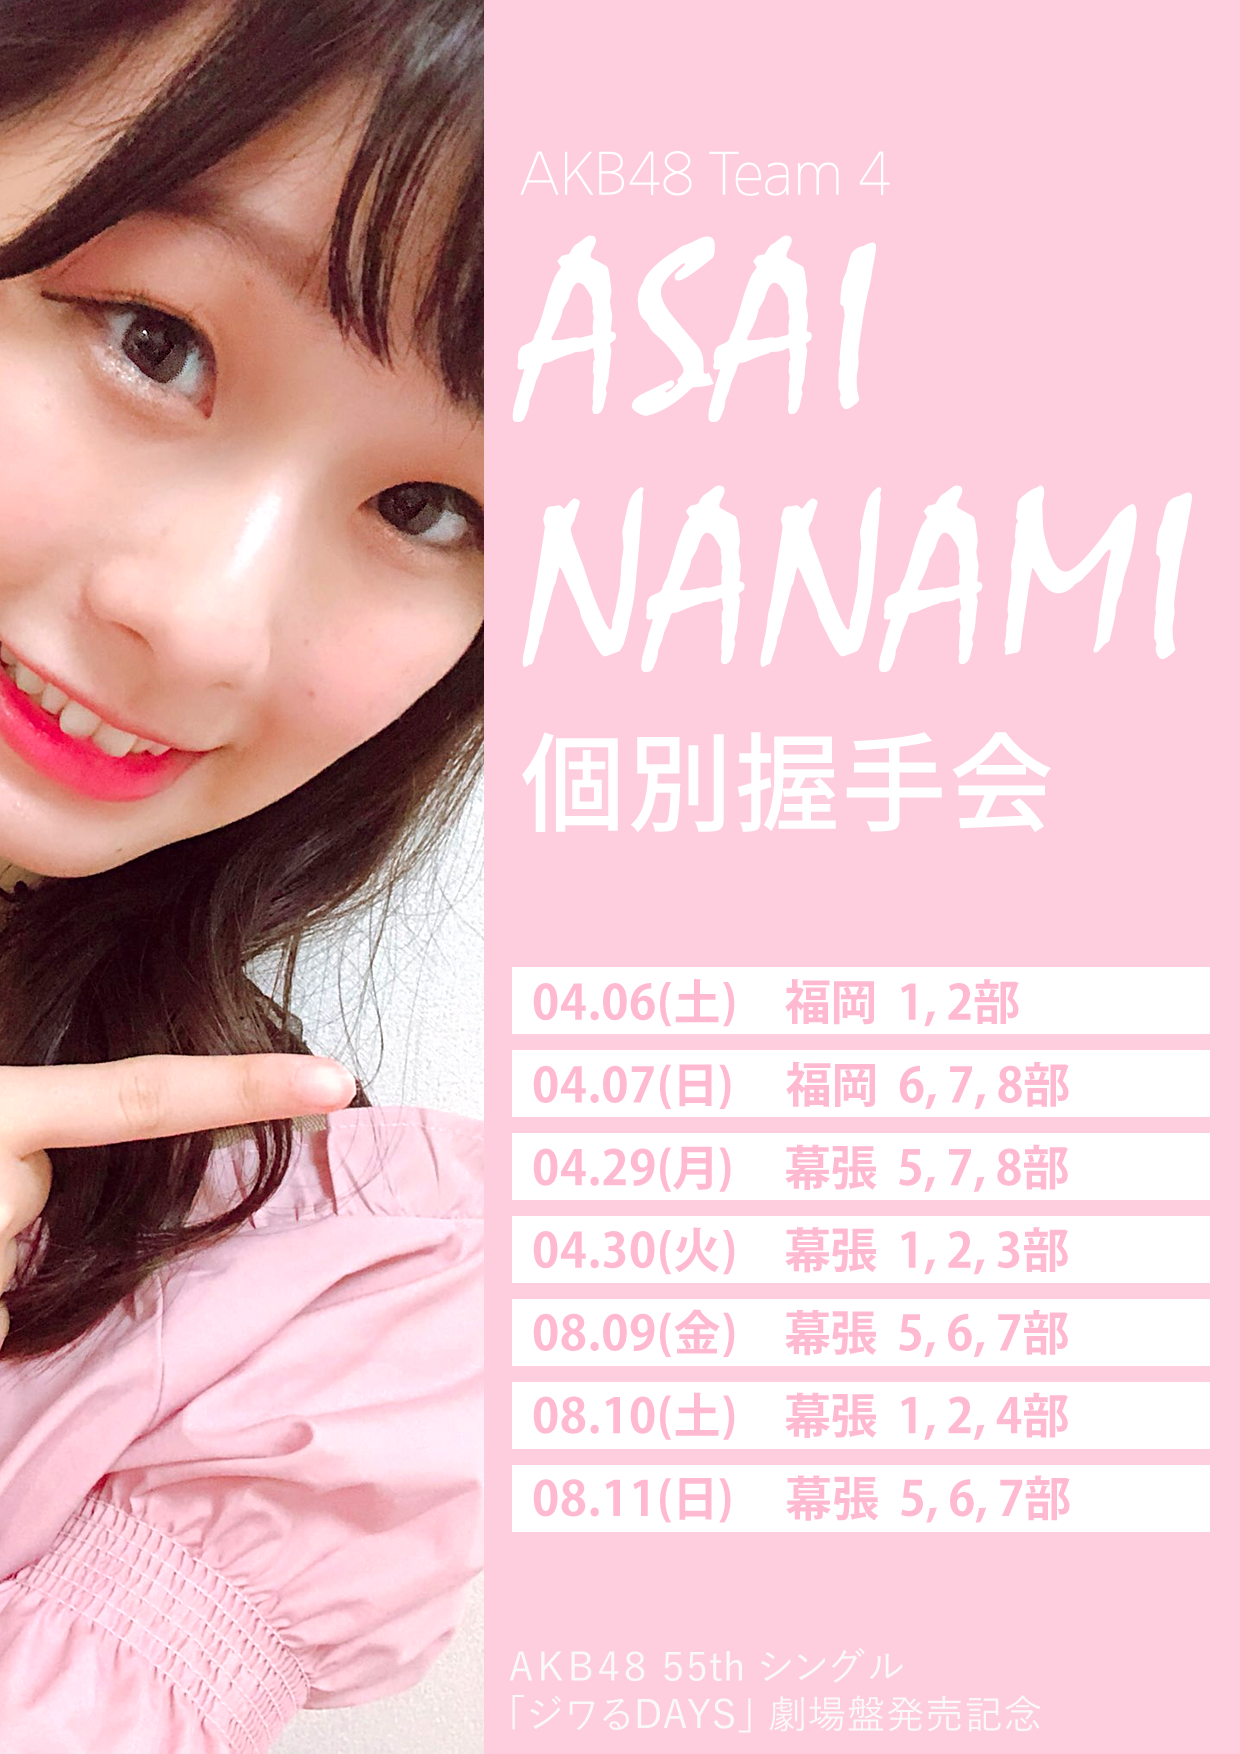 AKB48 싱글 55집 아사이 나나미 악수회 일본어 포스터